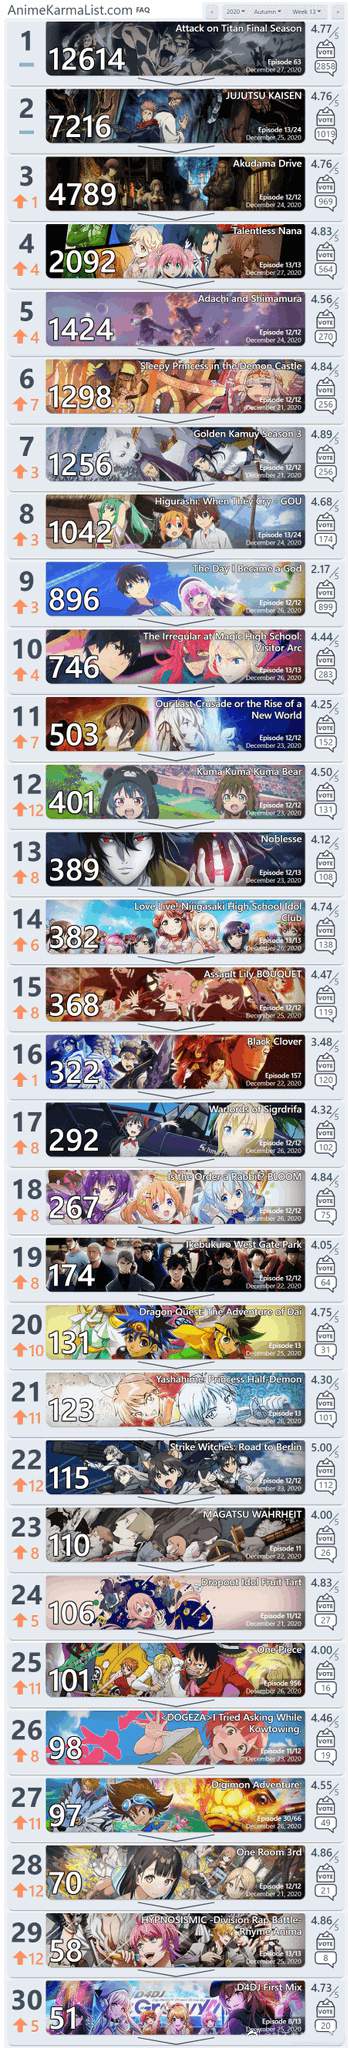 r/anime 2020年秋季30强动画第13周排行榜公开